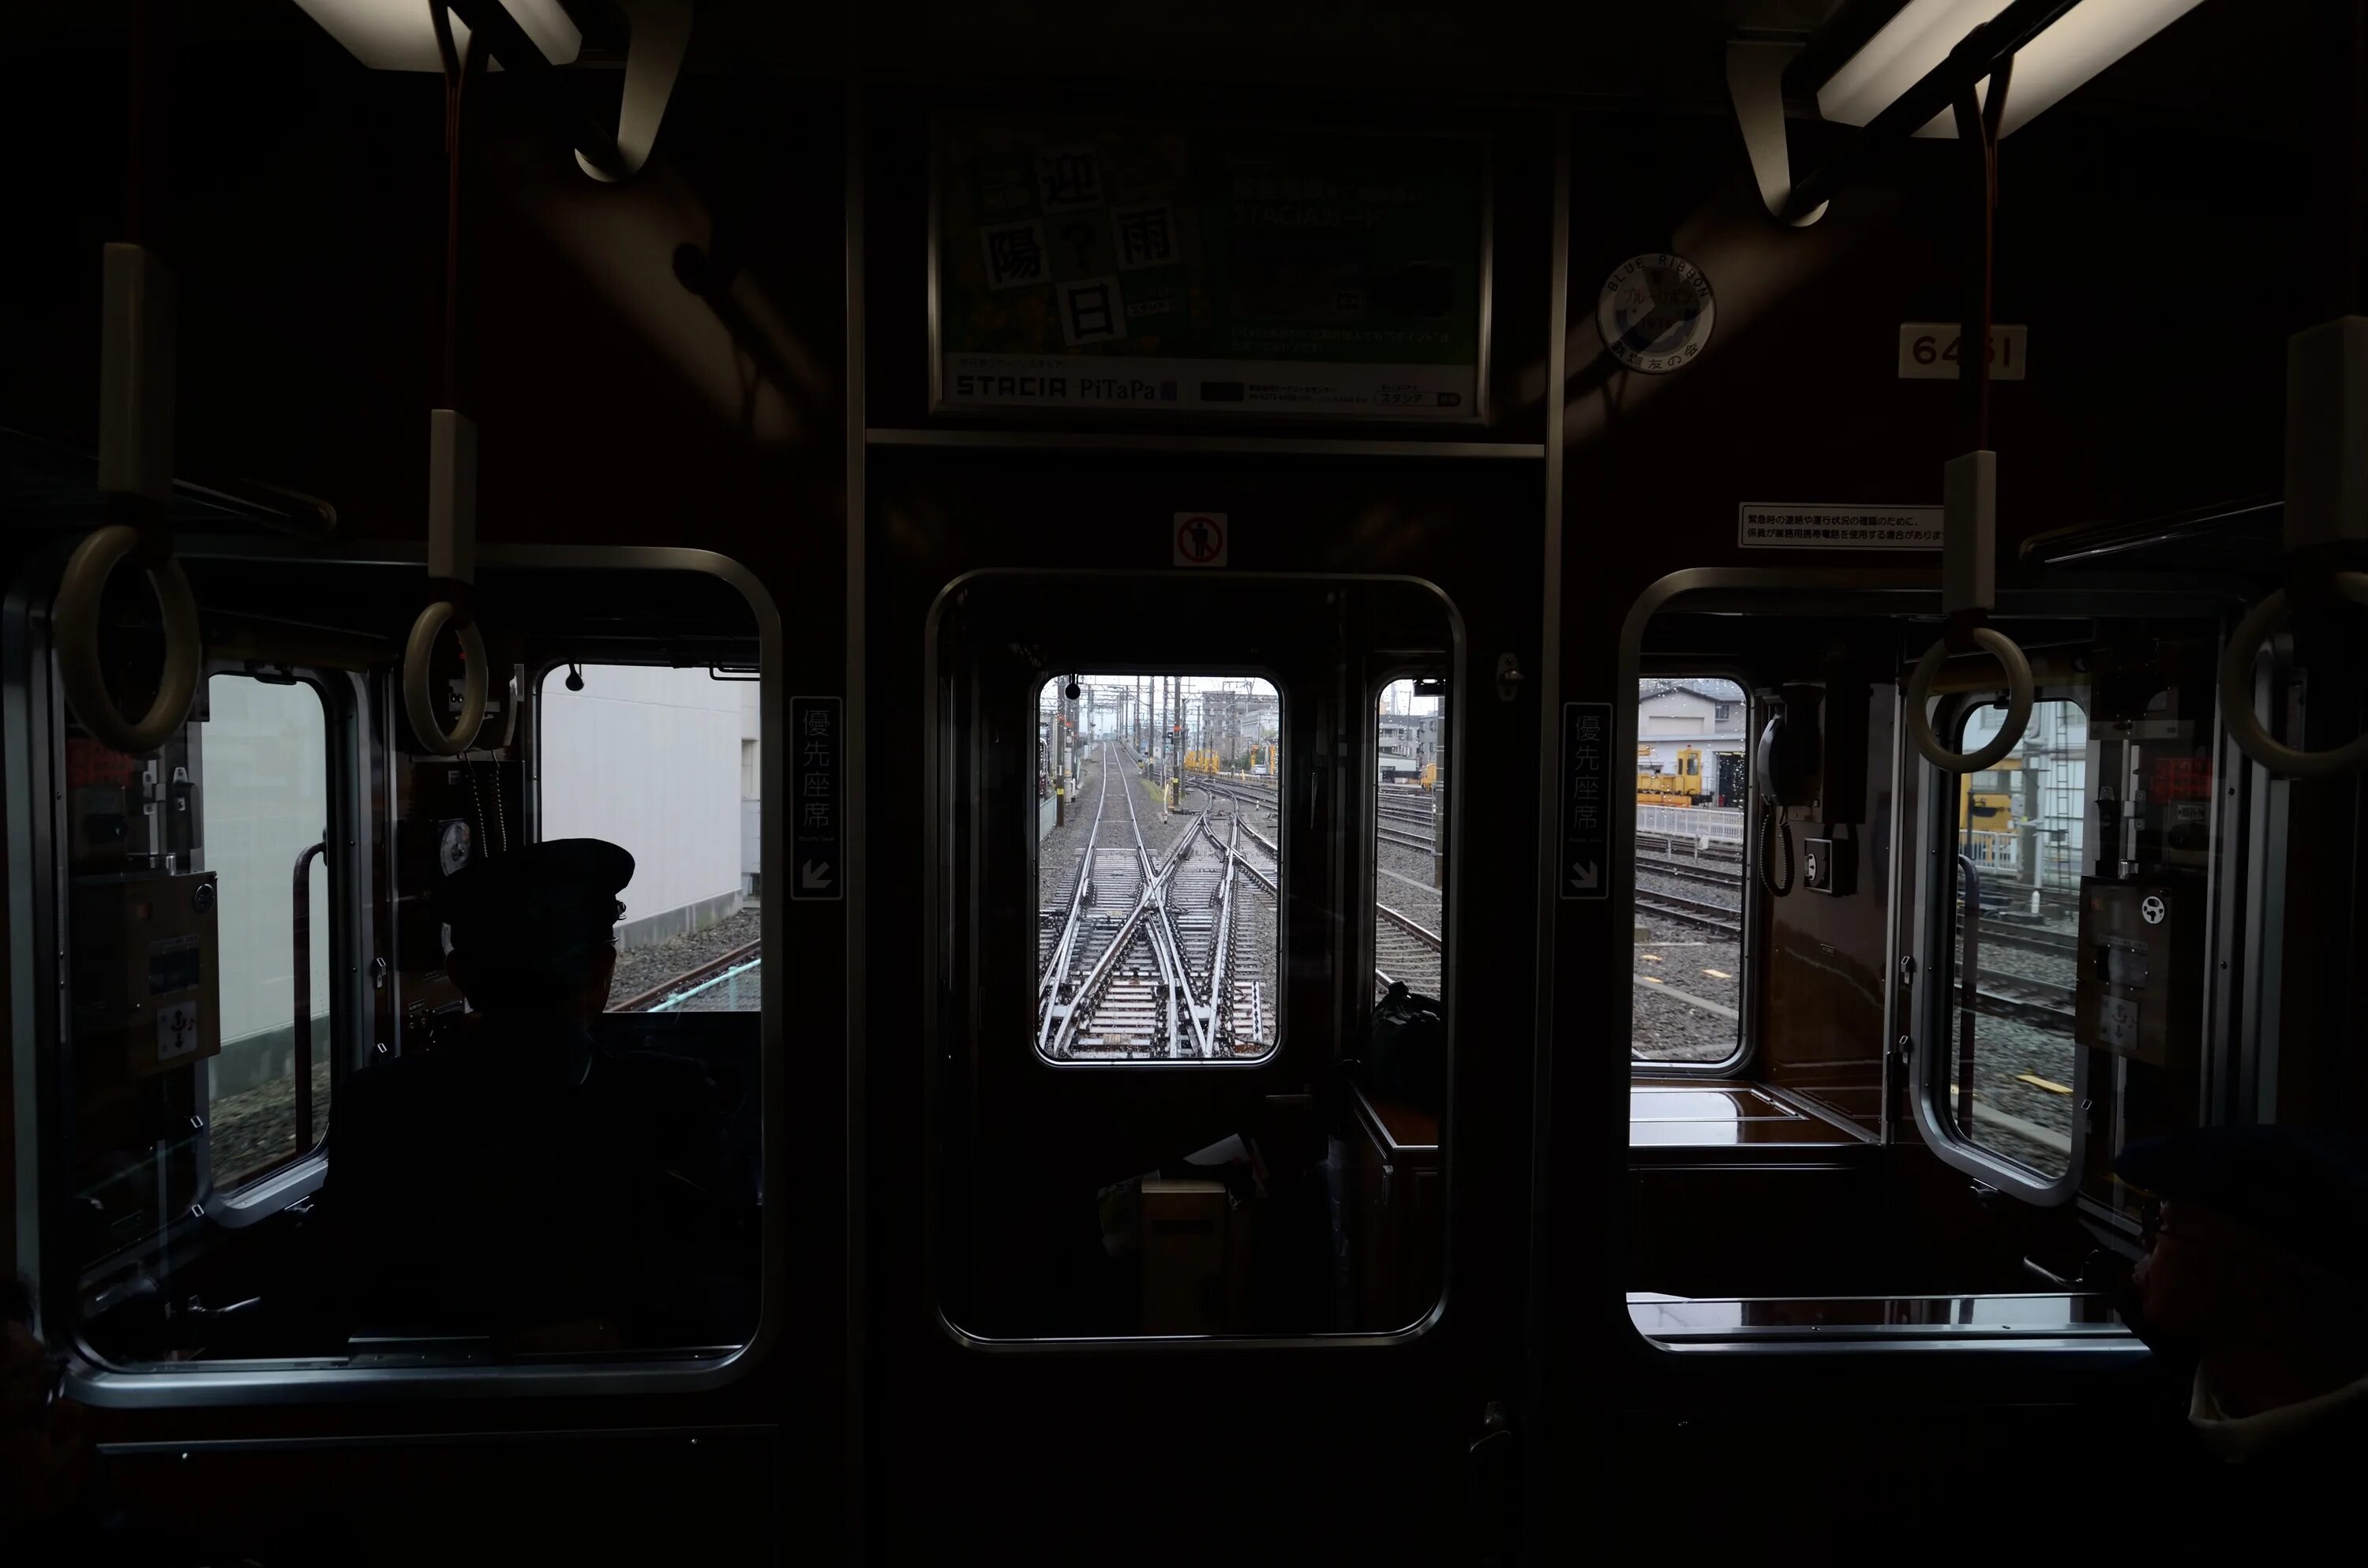 Окно вагона метро. Вагон метро в темноте. Вид из окна вагона метро. Поезд метро в темноте.